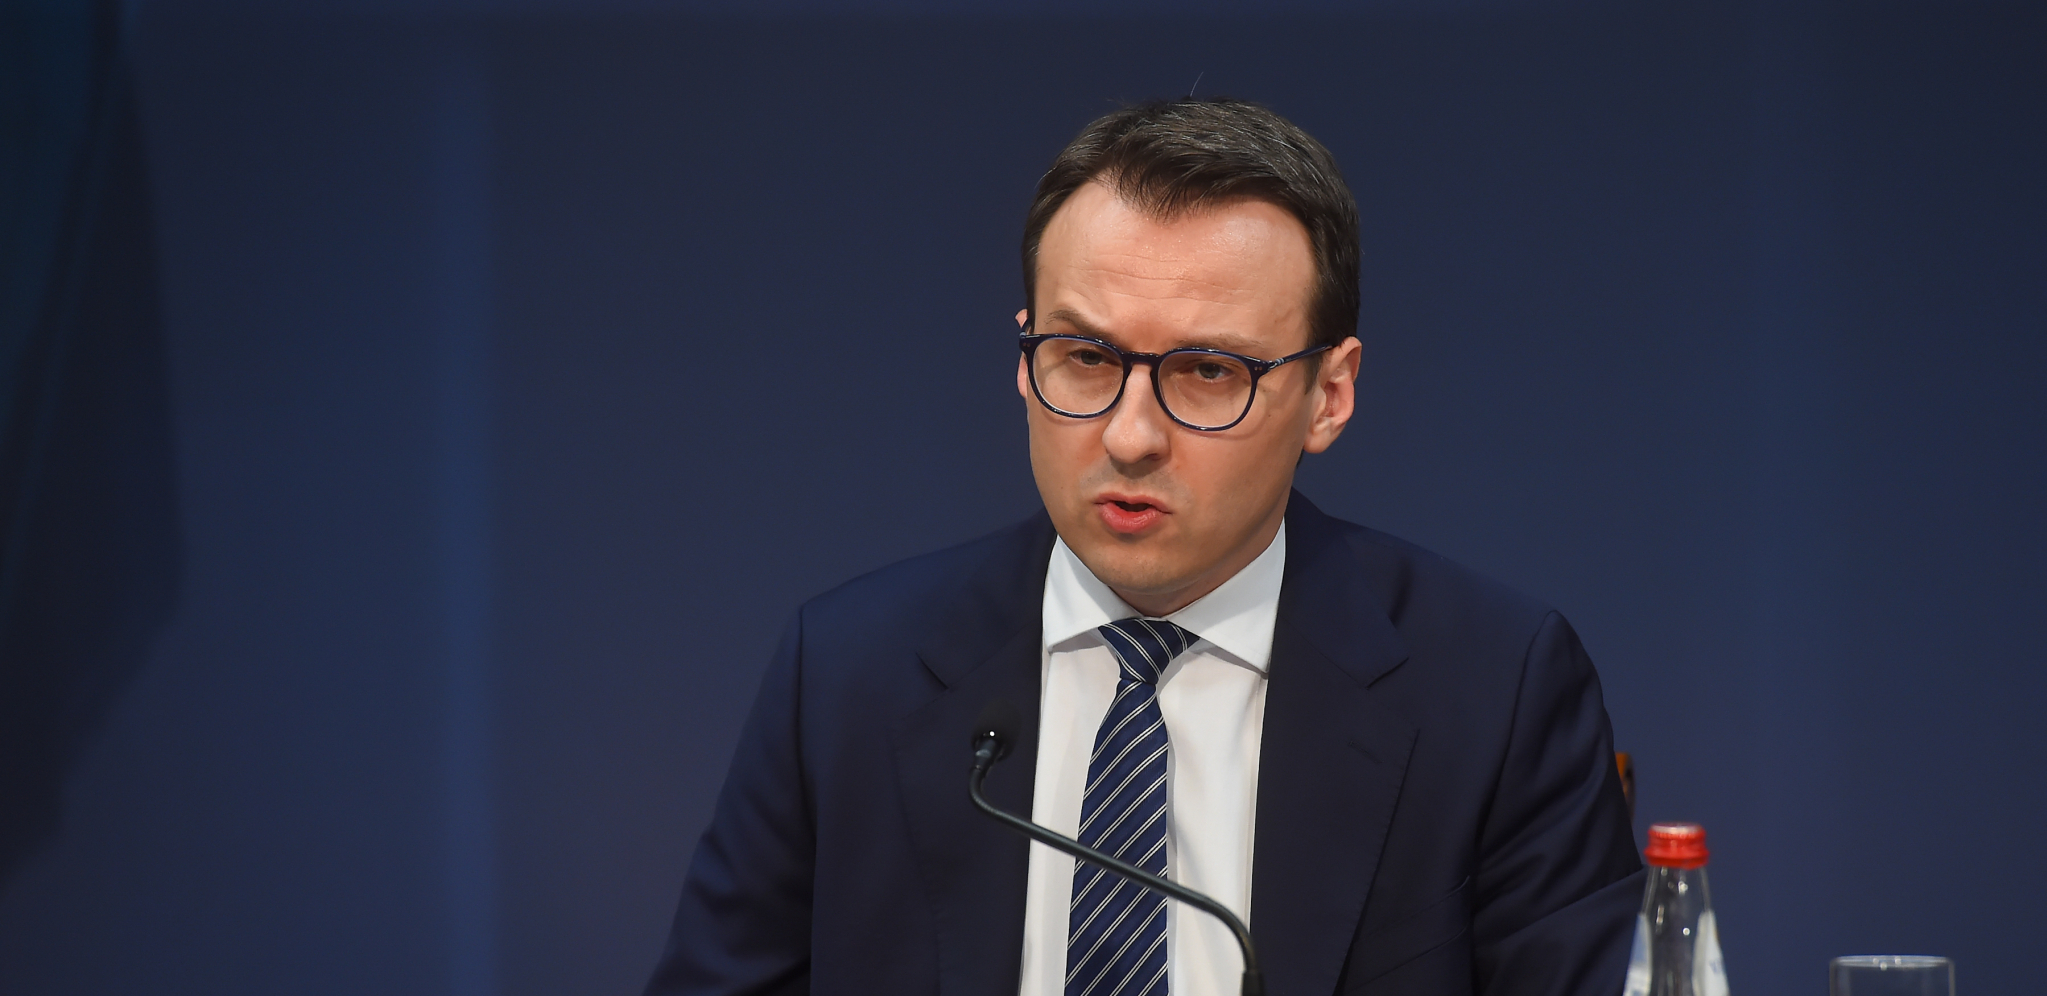 BESRAMNE LAŽI VJOSE OSMANI Petković odbacio tvrdnje predsednice tzv. Kosova